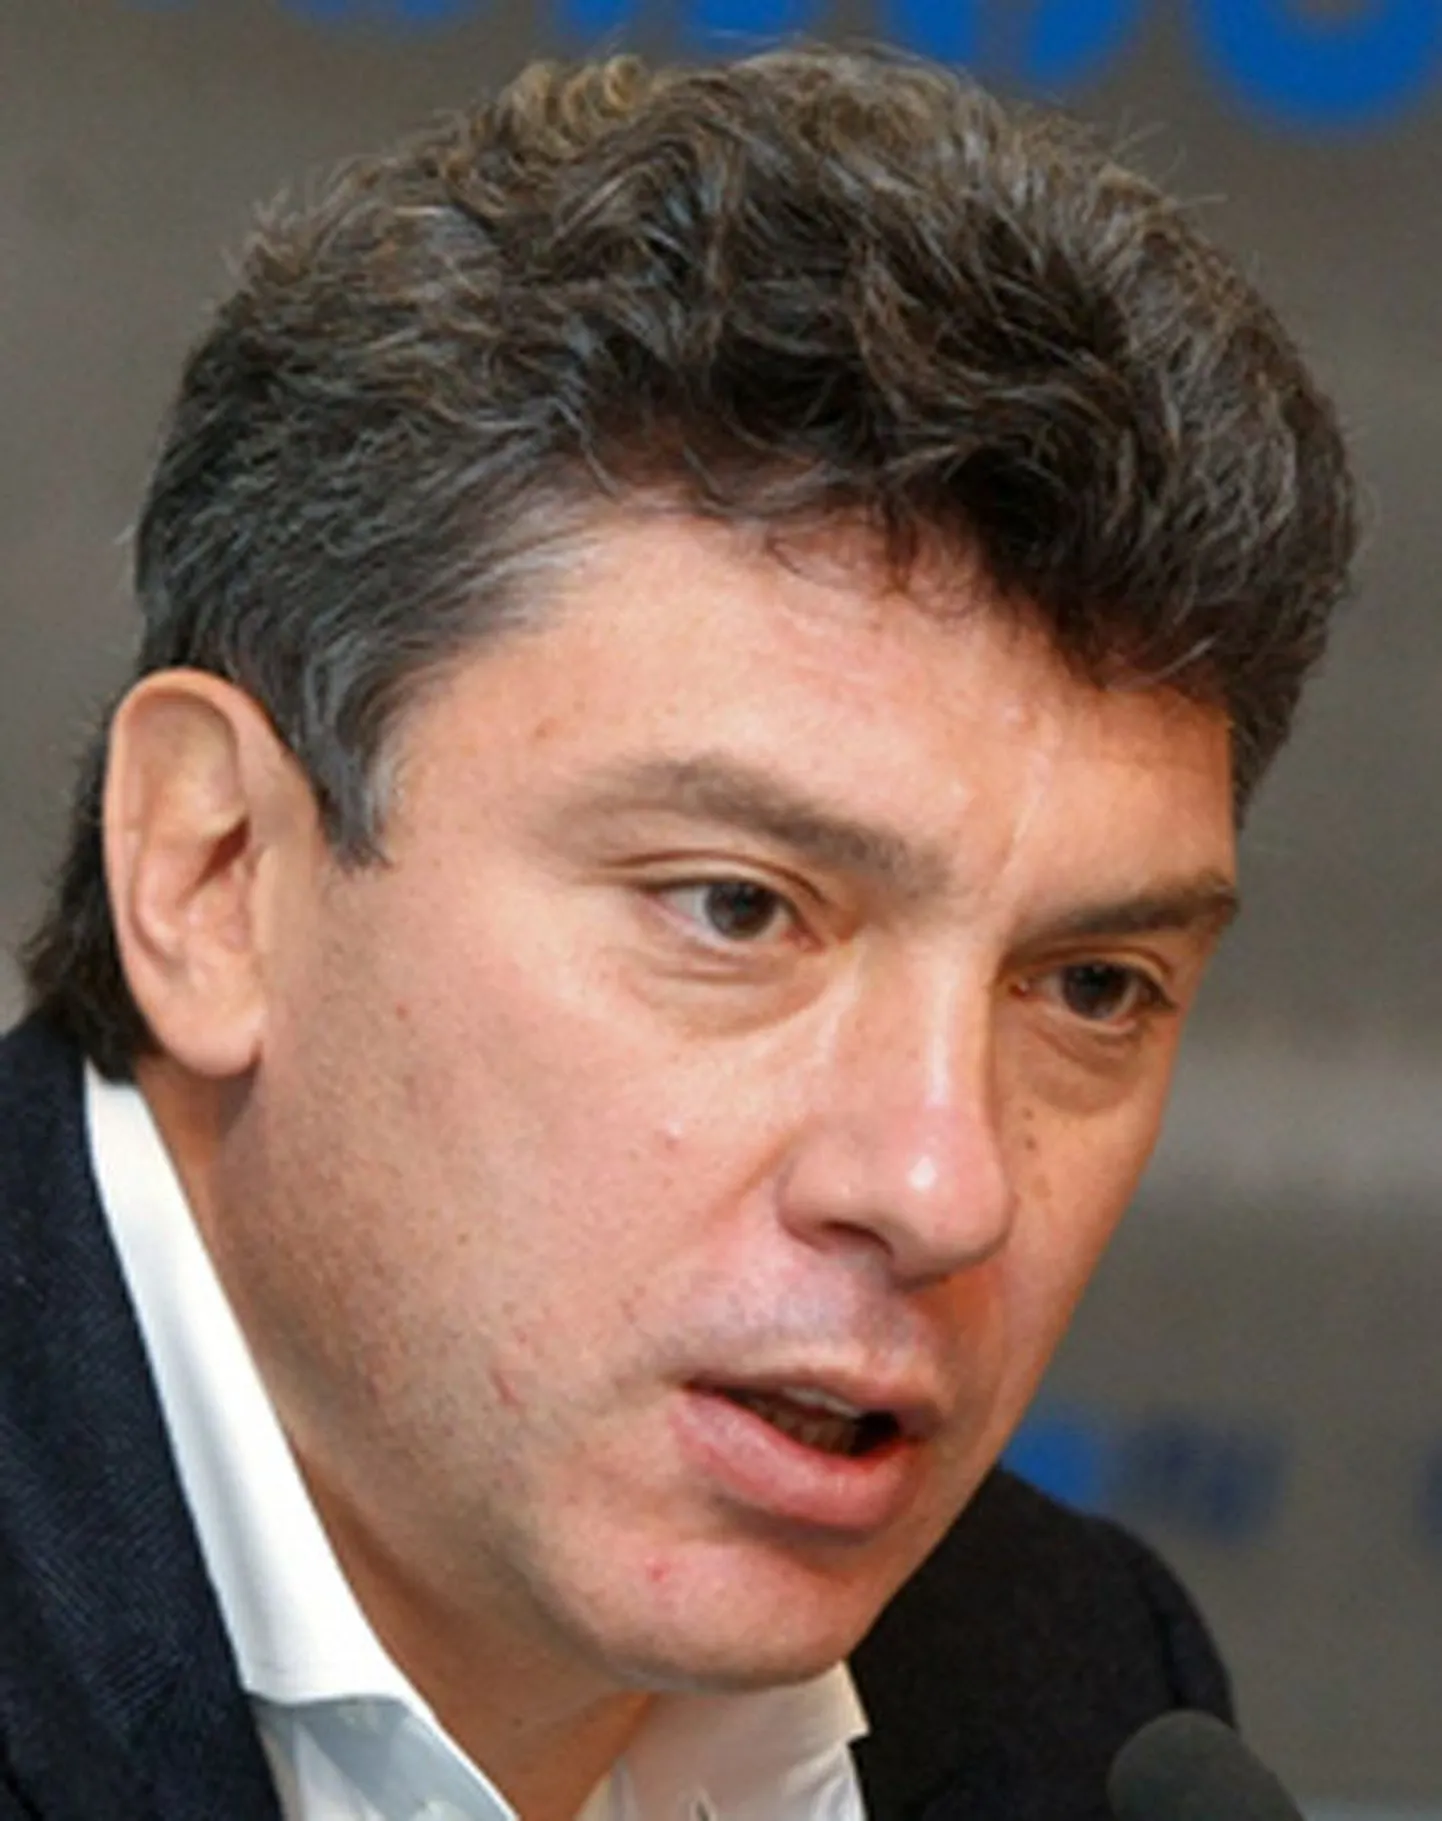 Venemaa opositsioonipoliitik, endine asepeaminister Boriss Nemtsov:
«Venemaa võimud peavad 
NATOt oma peamiseks vaenlaseks.»